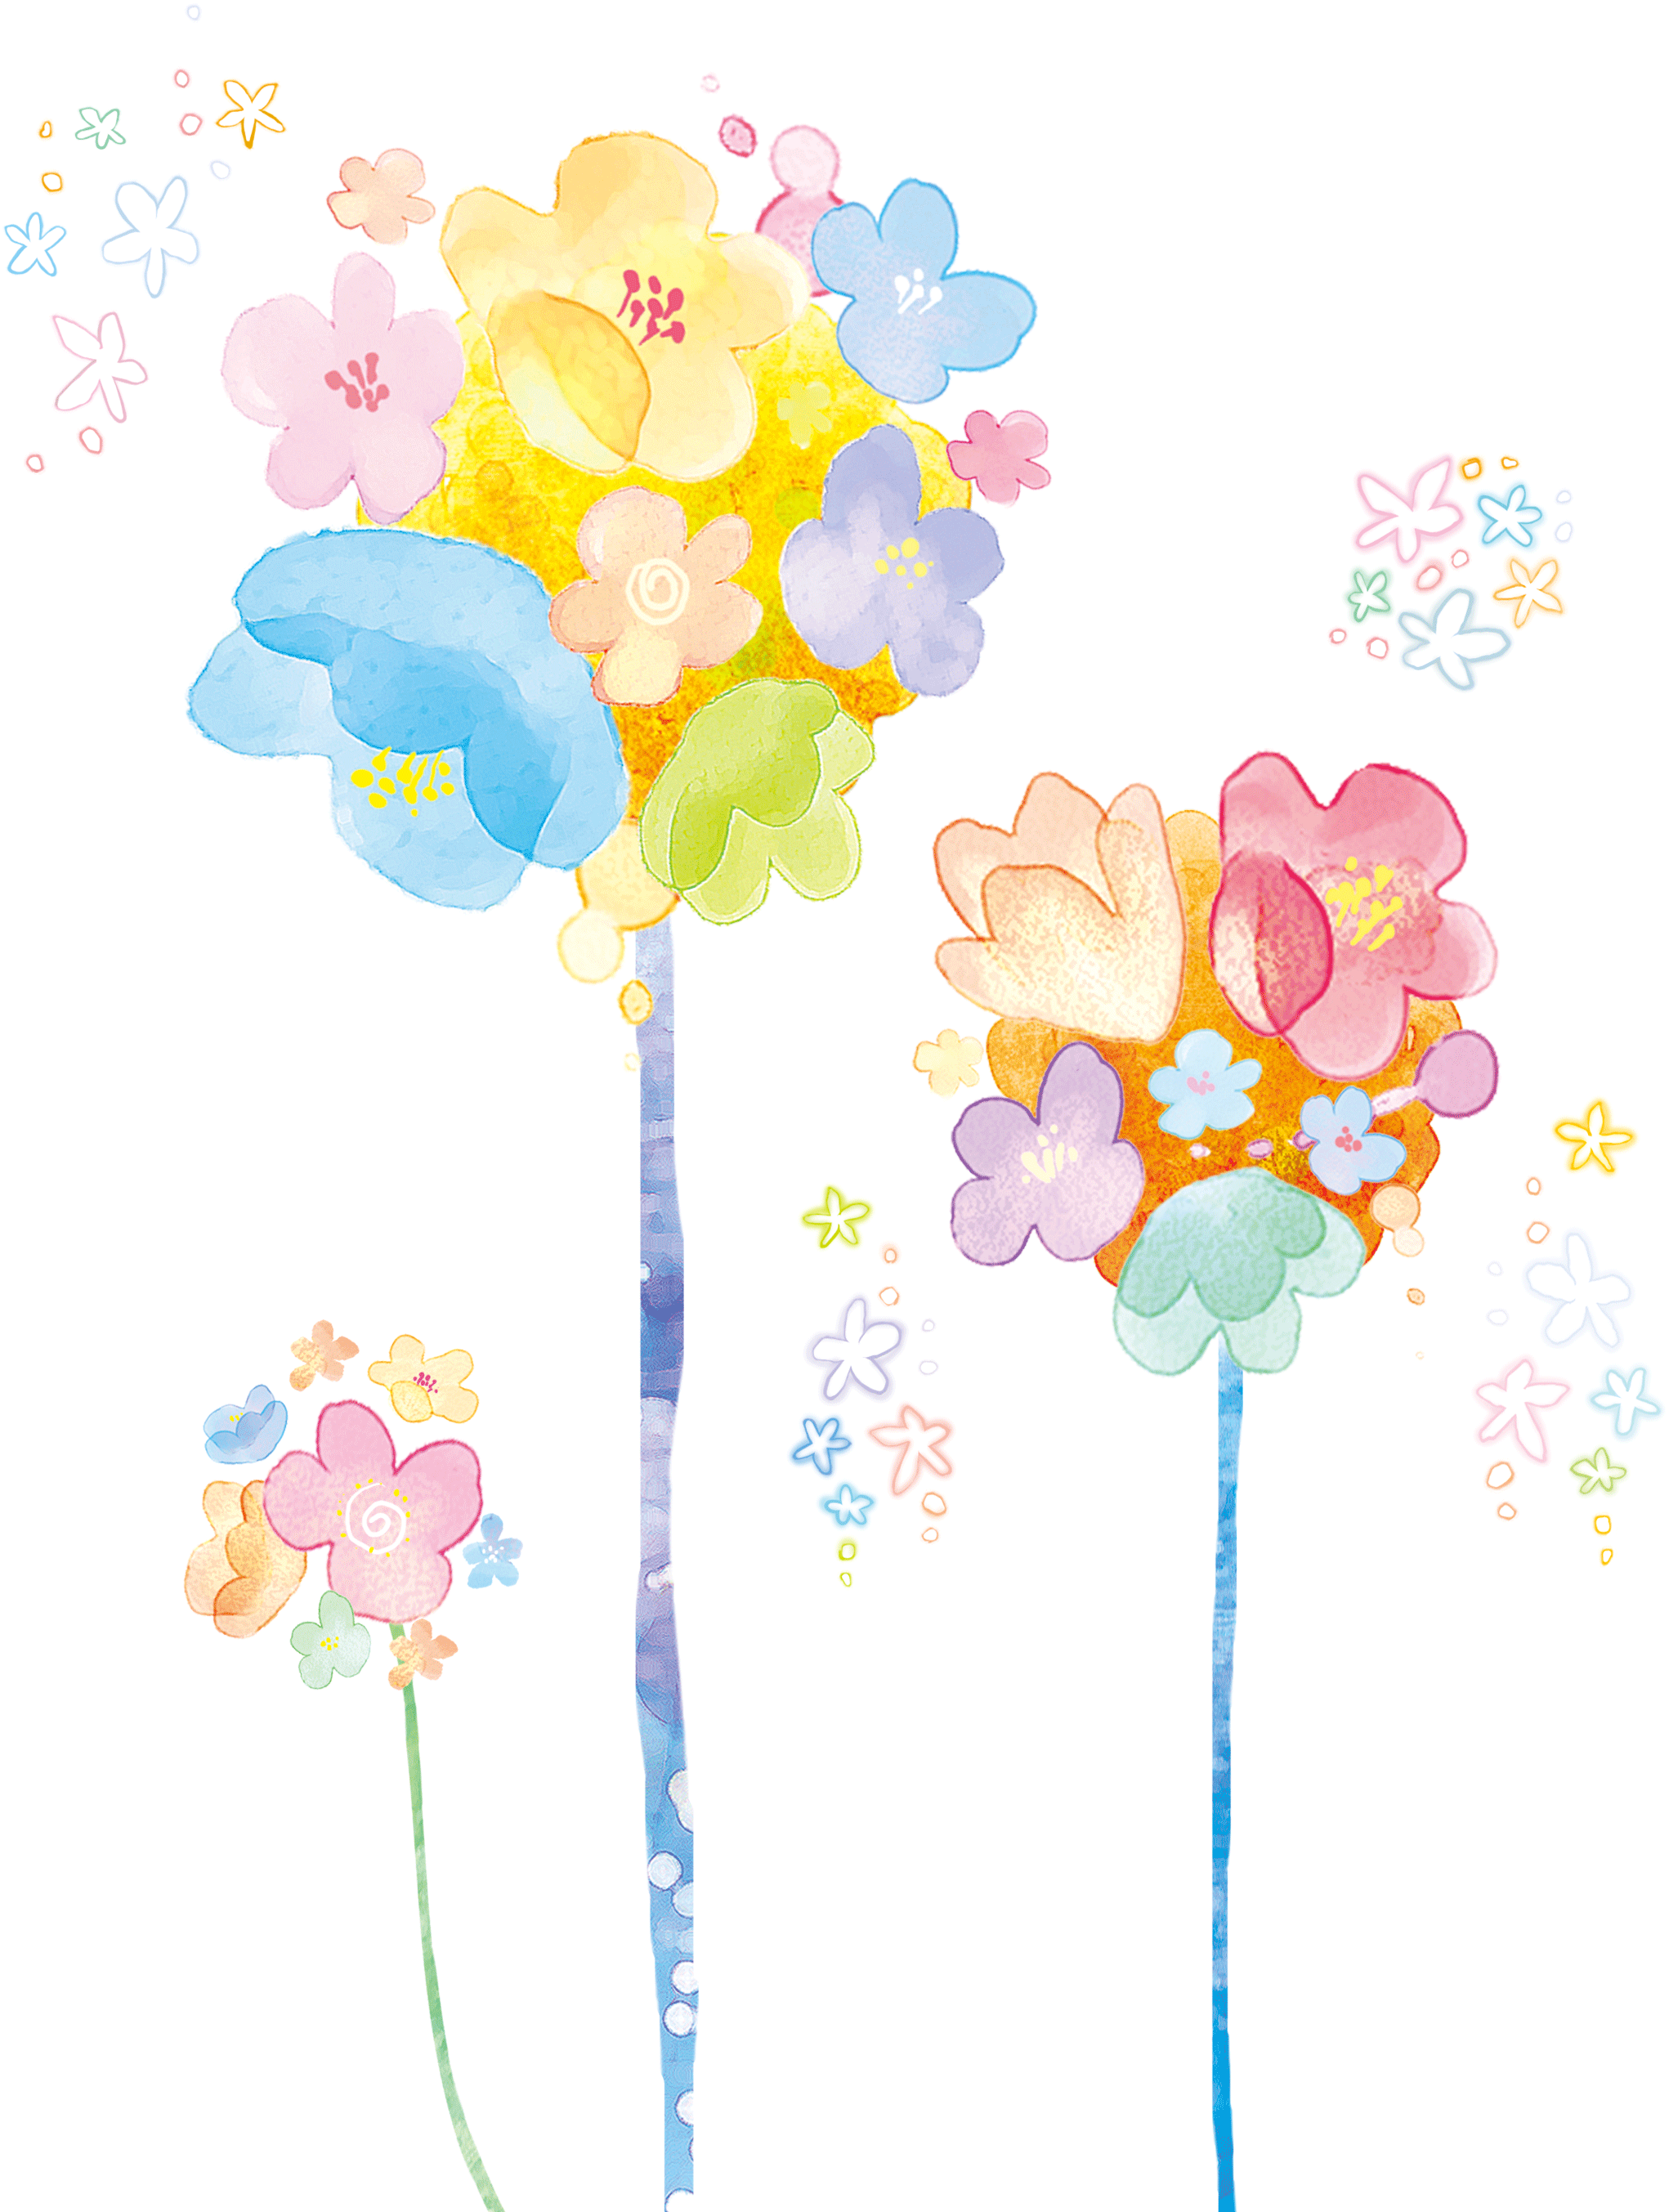 freetoedit japan flower handdrawn sticker by teatea221